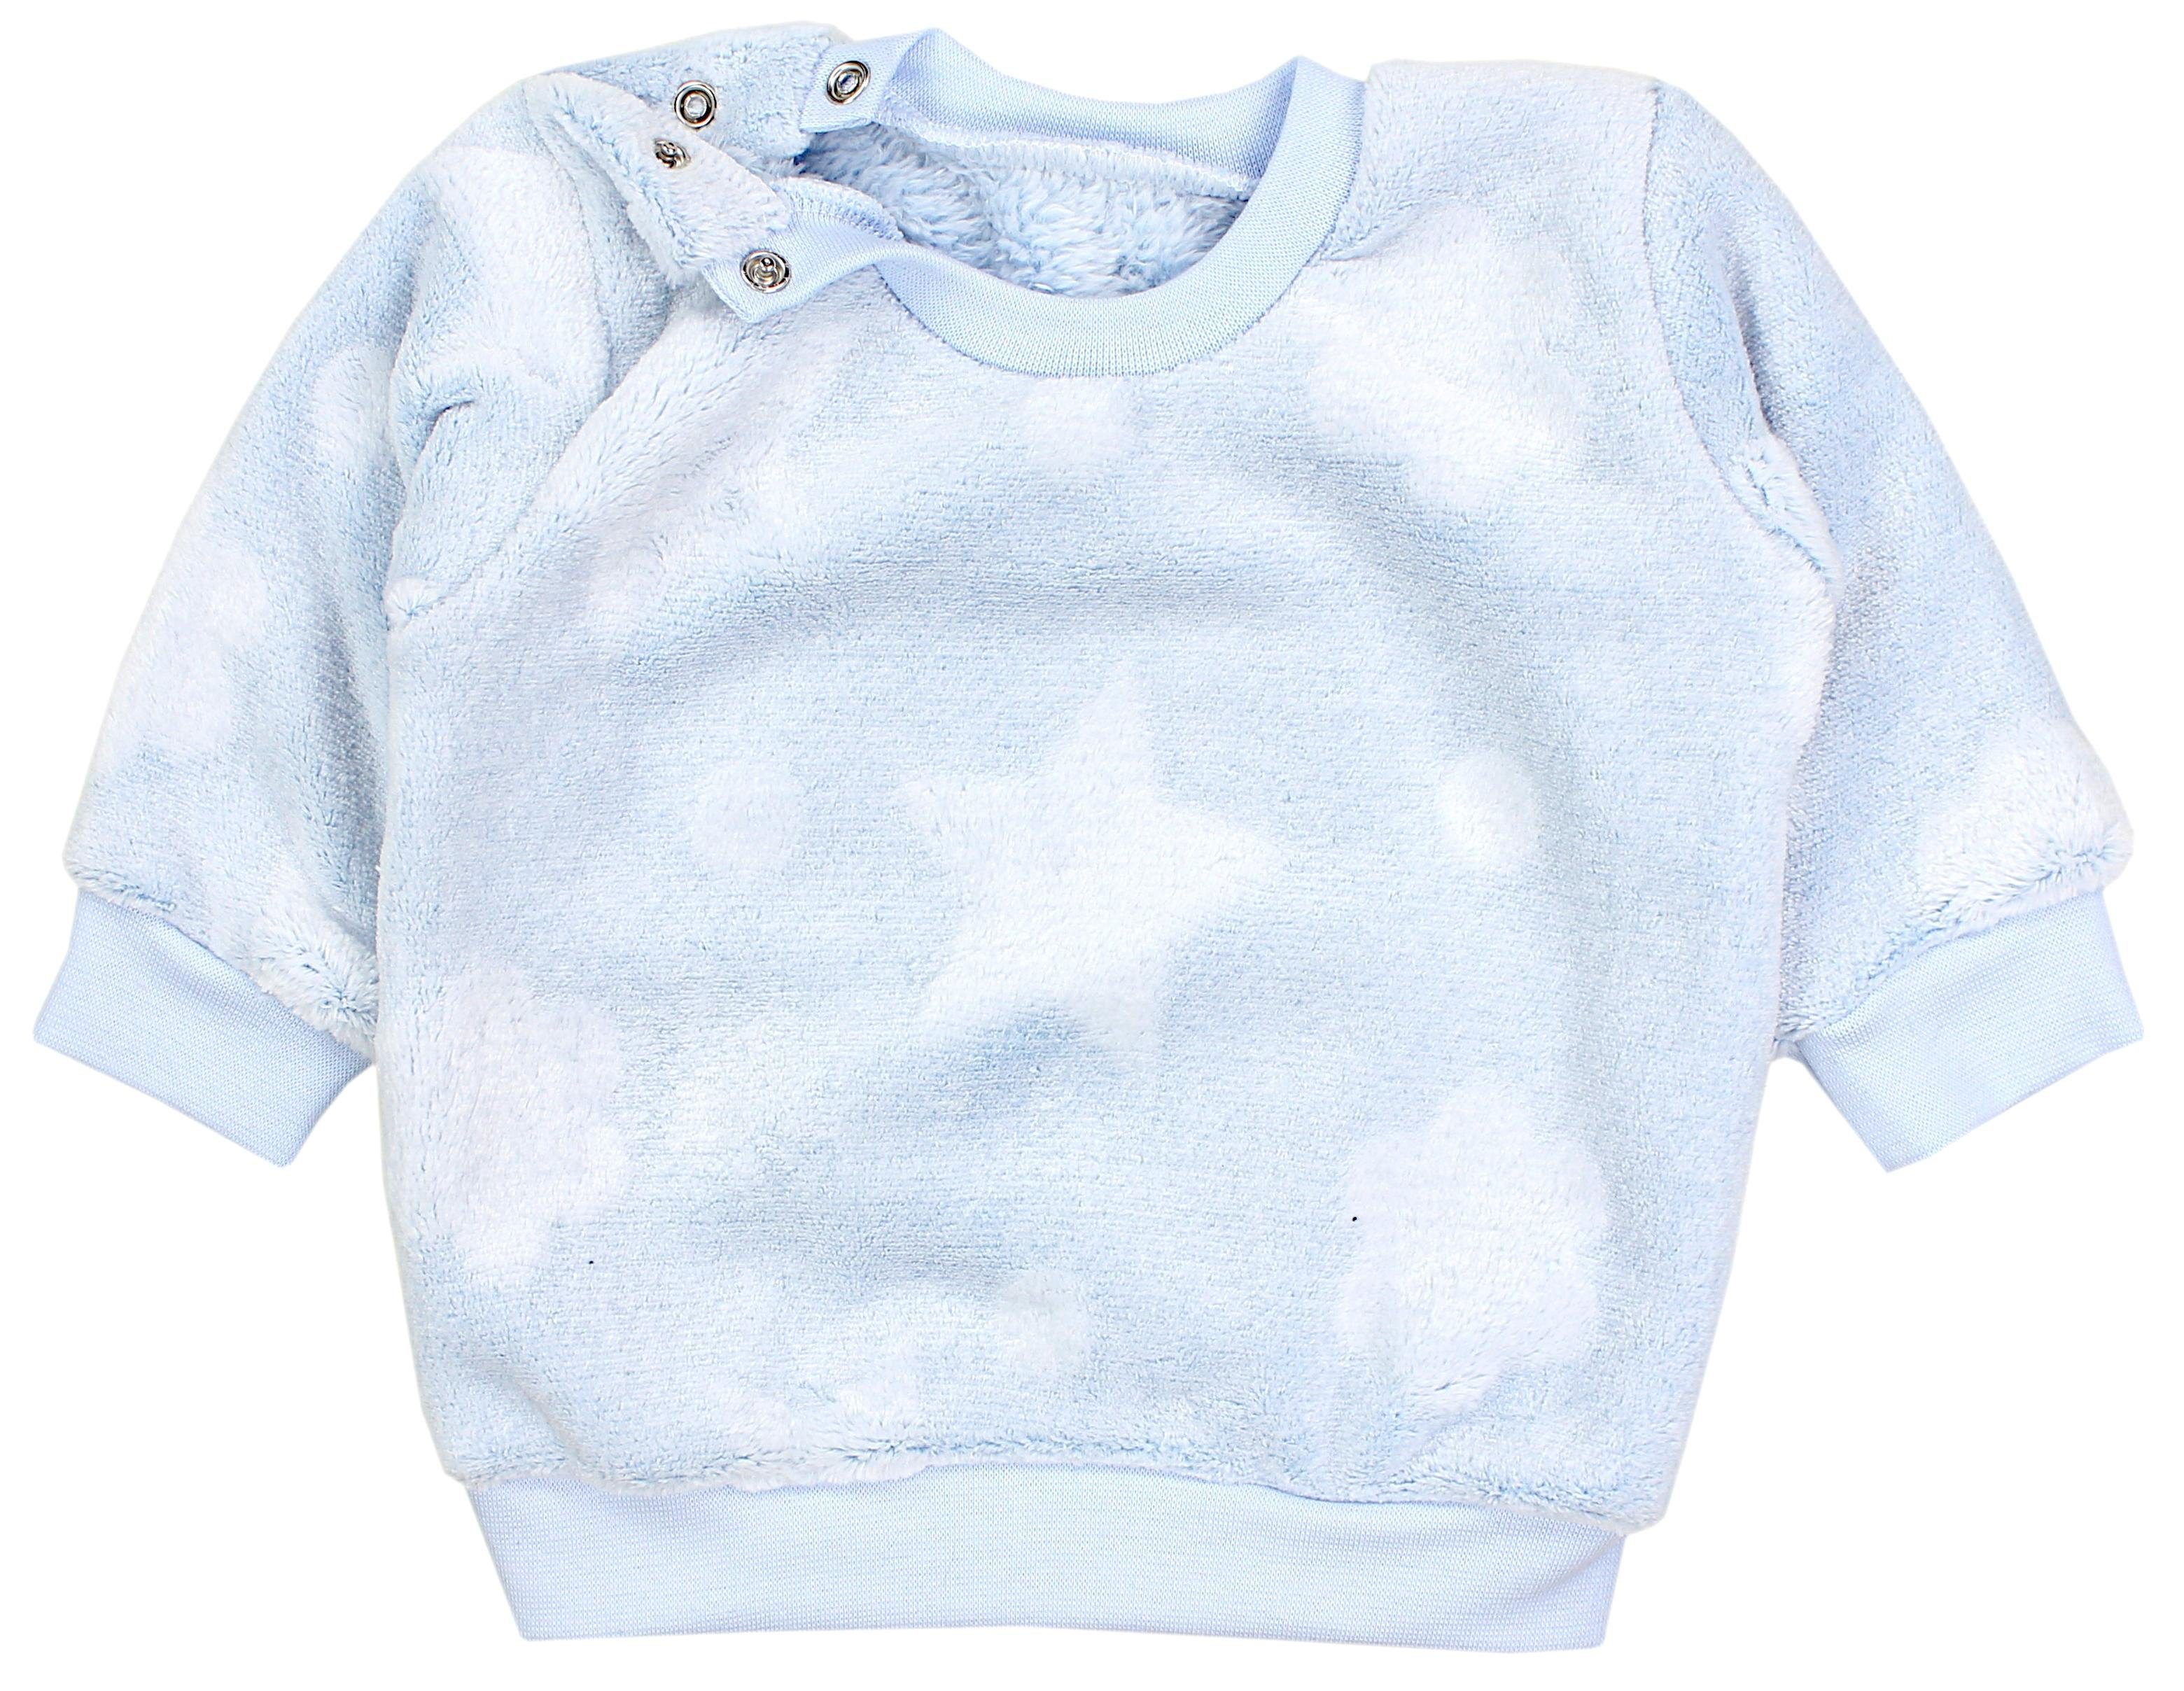 Sterne Fleece Winter Pullover Blau TupTam Warm Jungen Kleinkind Langarmshirt Baby Fleecepullover Unisex Mädchen TupTam